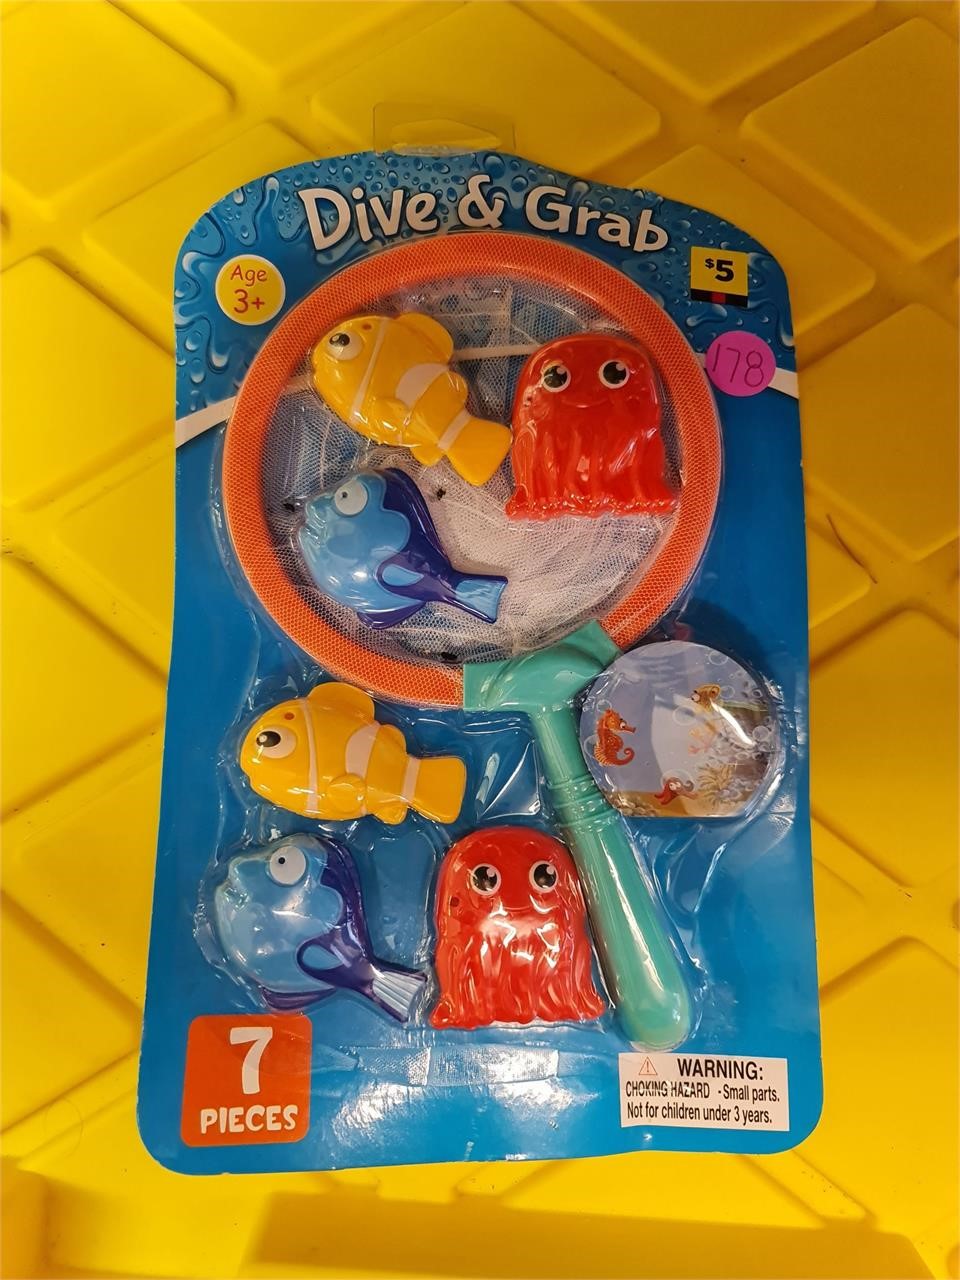 Dive & grab